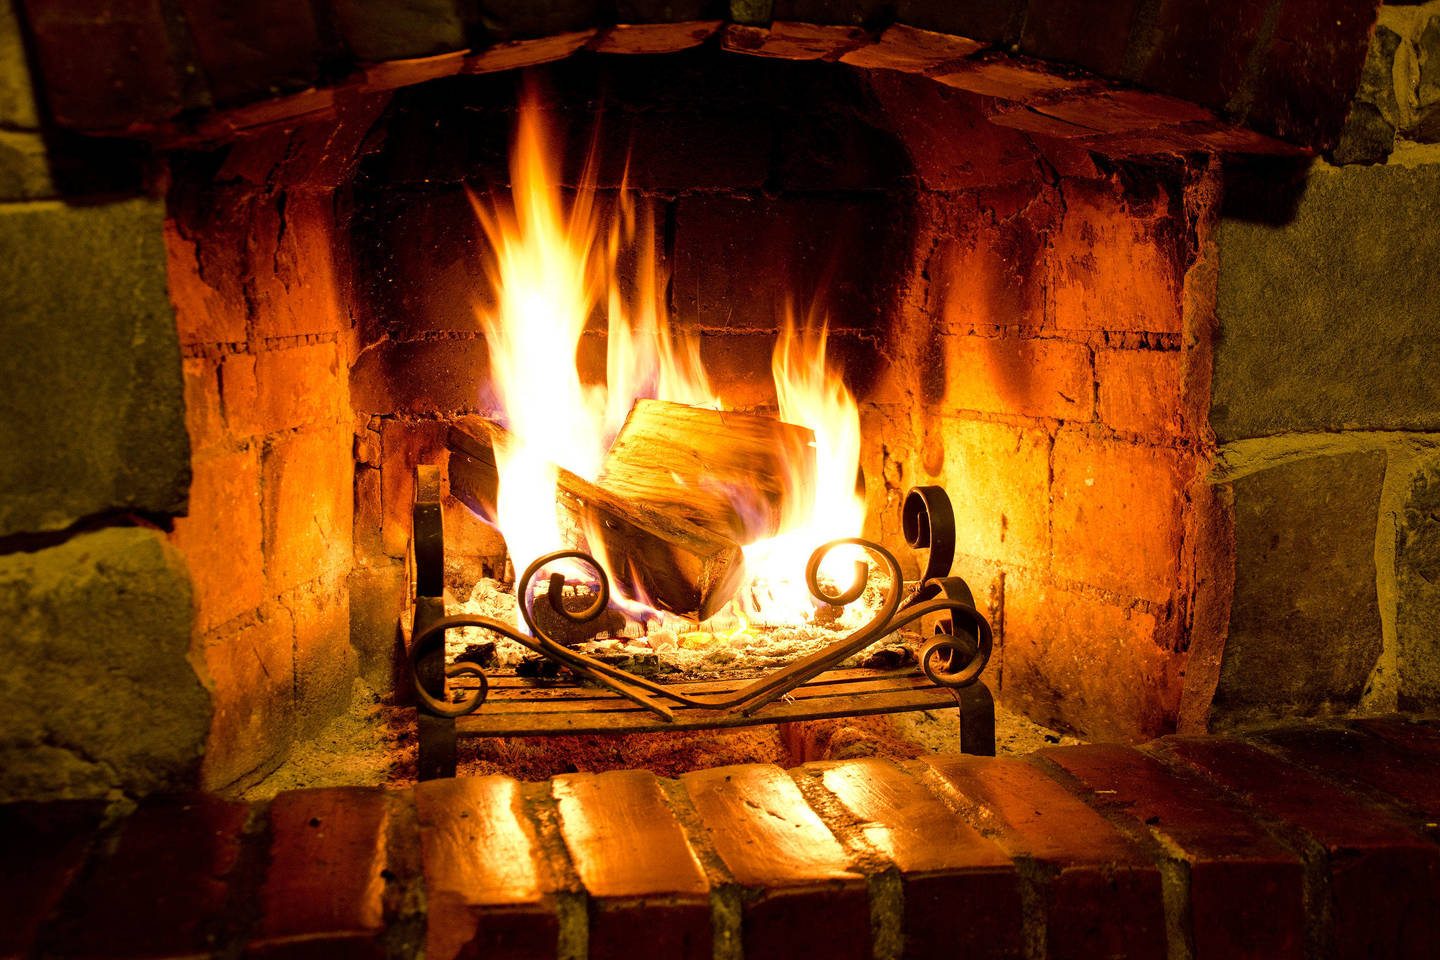  liepsnose galima žūti, tačiau ugnis gali ir sušildyti, kai gresia mirtis nuo šalčio. Be to, ji turi daugybę panaudojimo būdų. Pateikiame 10 įdomių faktų apie ugnį, kurių greičiausiai tikrai nežinojote.<br> 123RF nuotr.